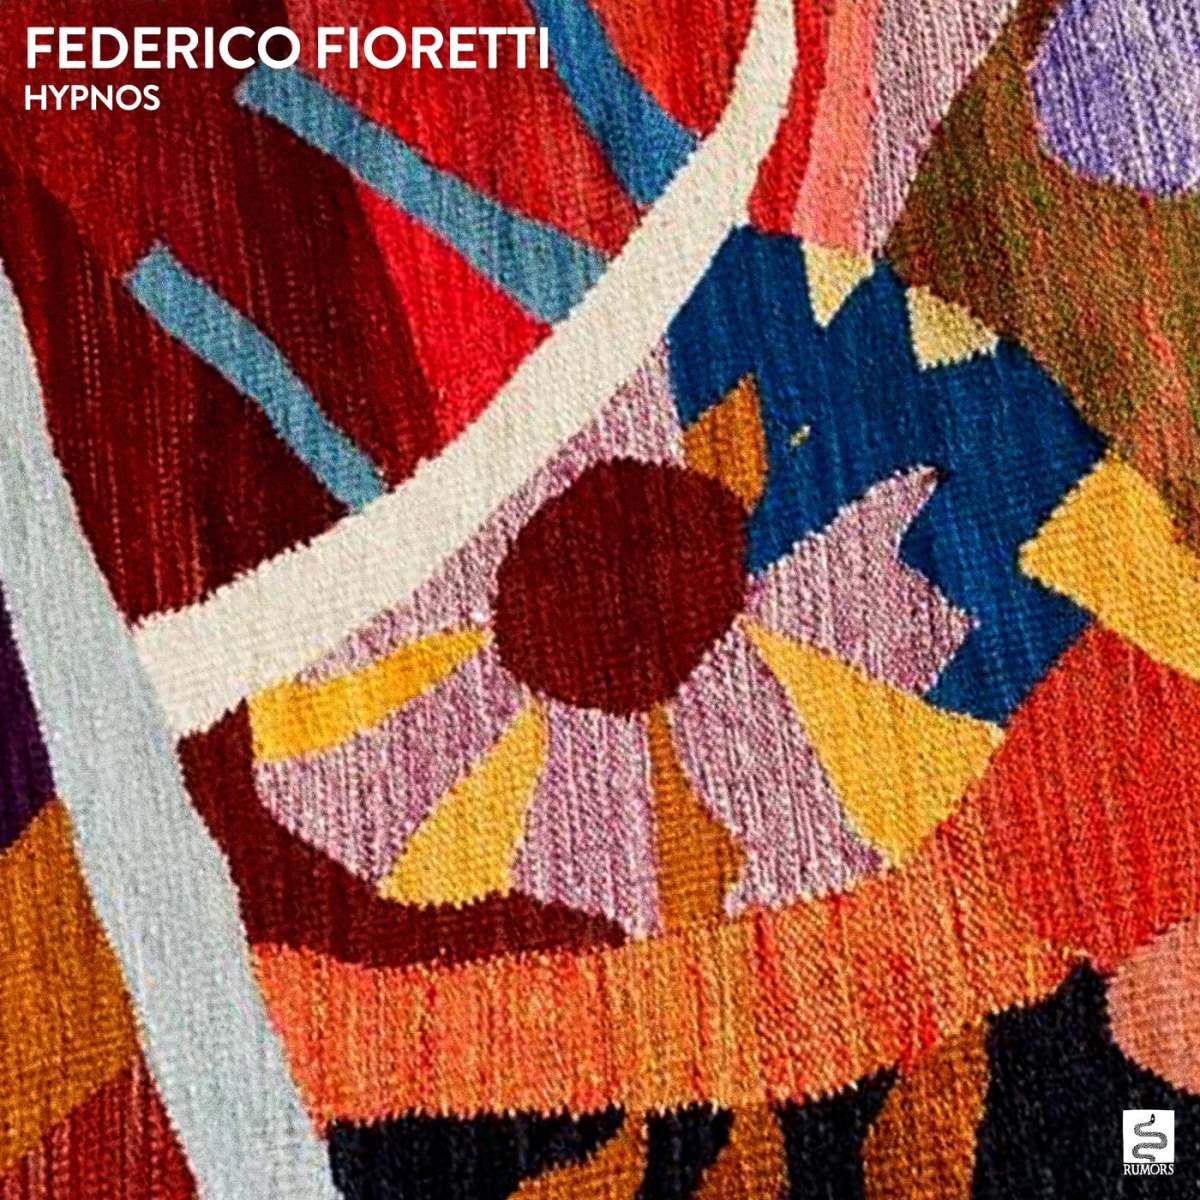 Federico Fioretti - Hypnos [Rumors Records]